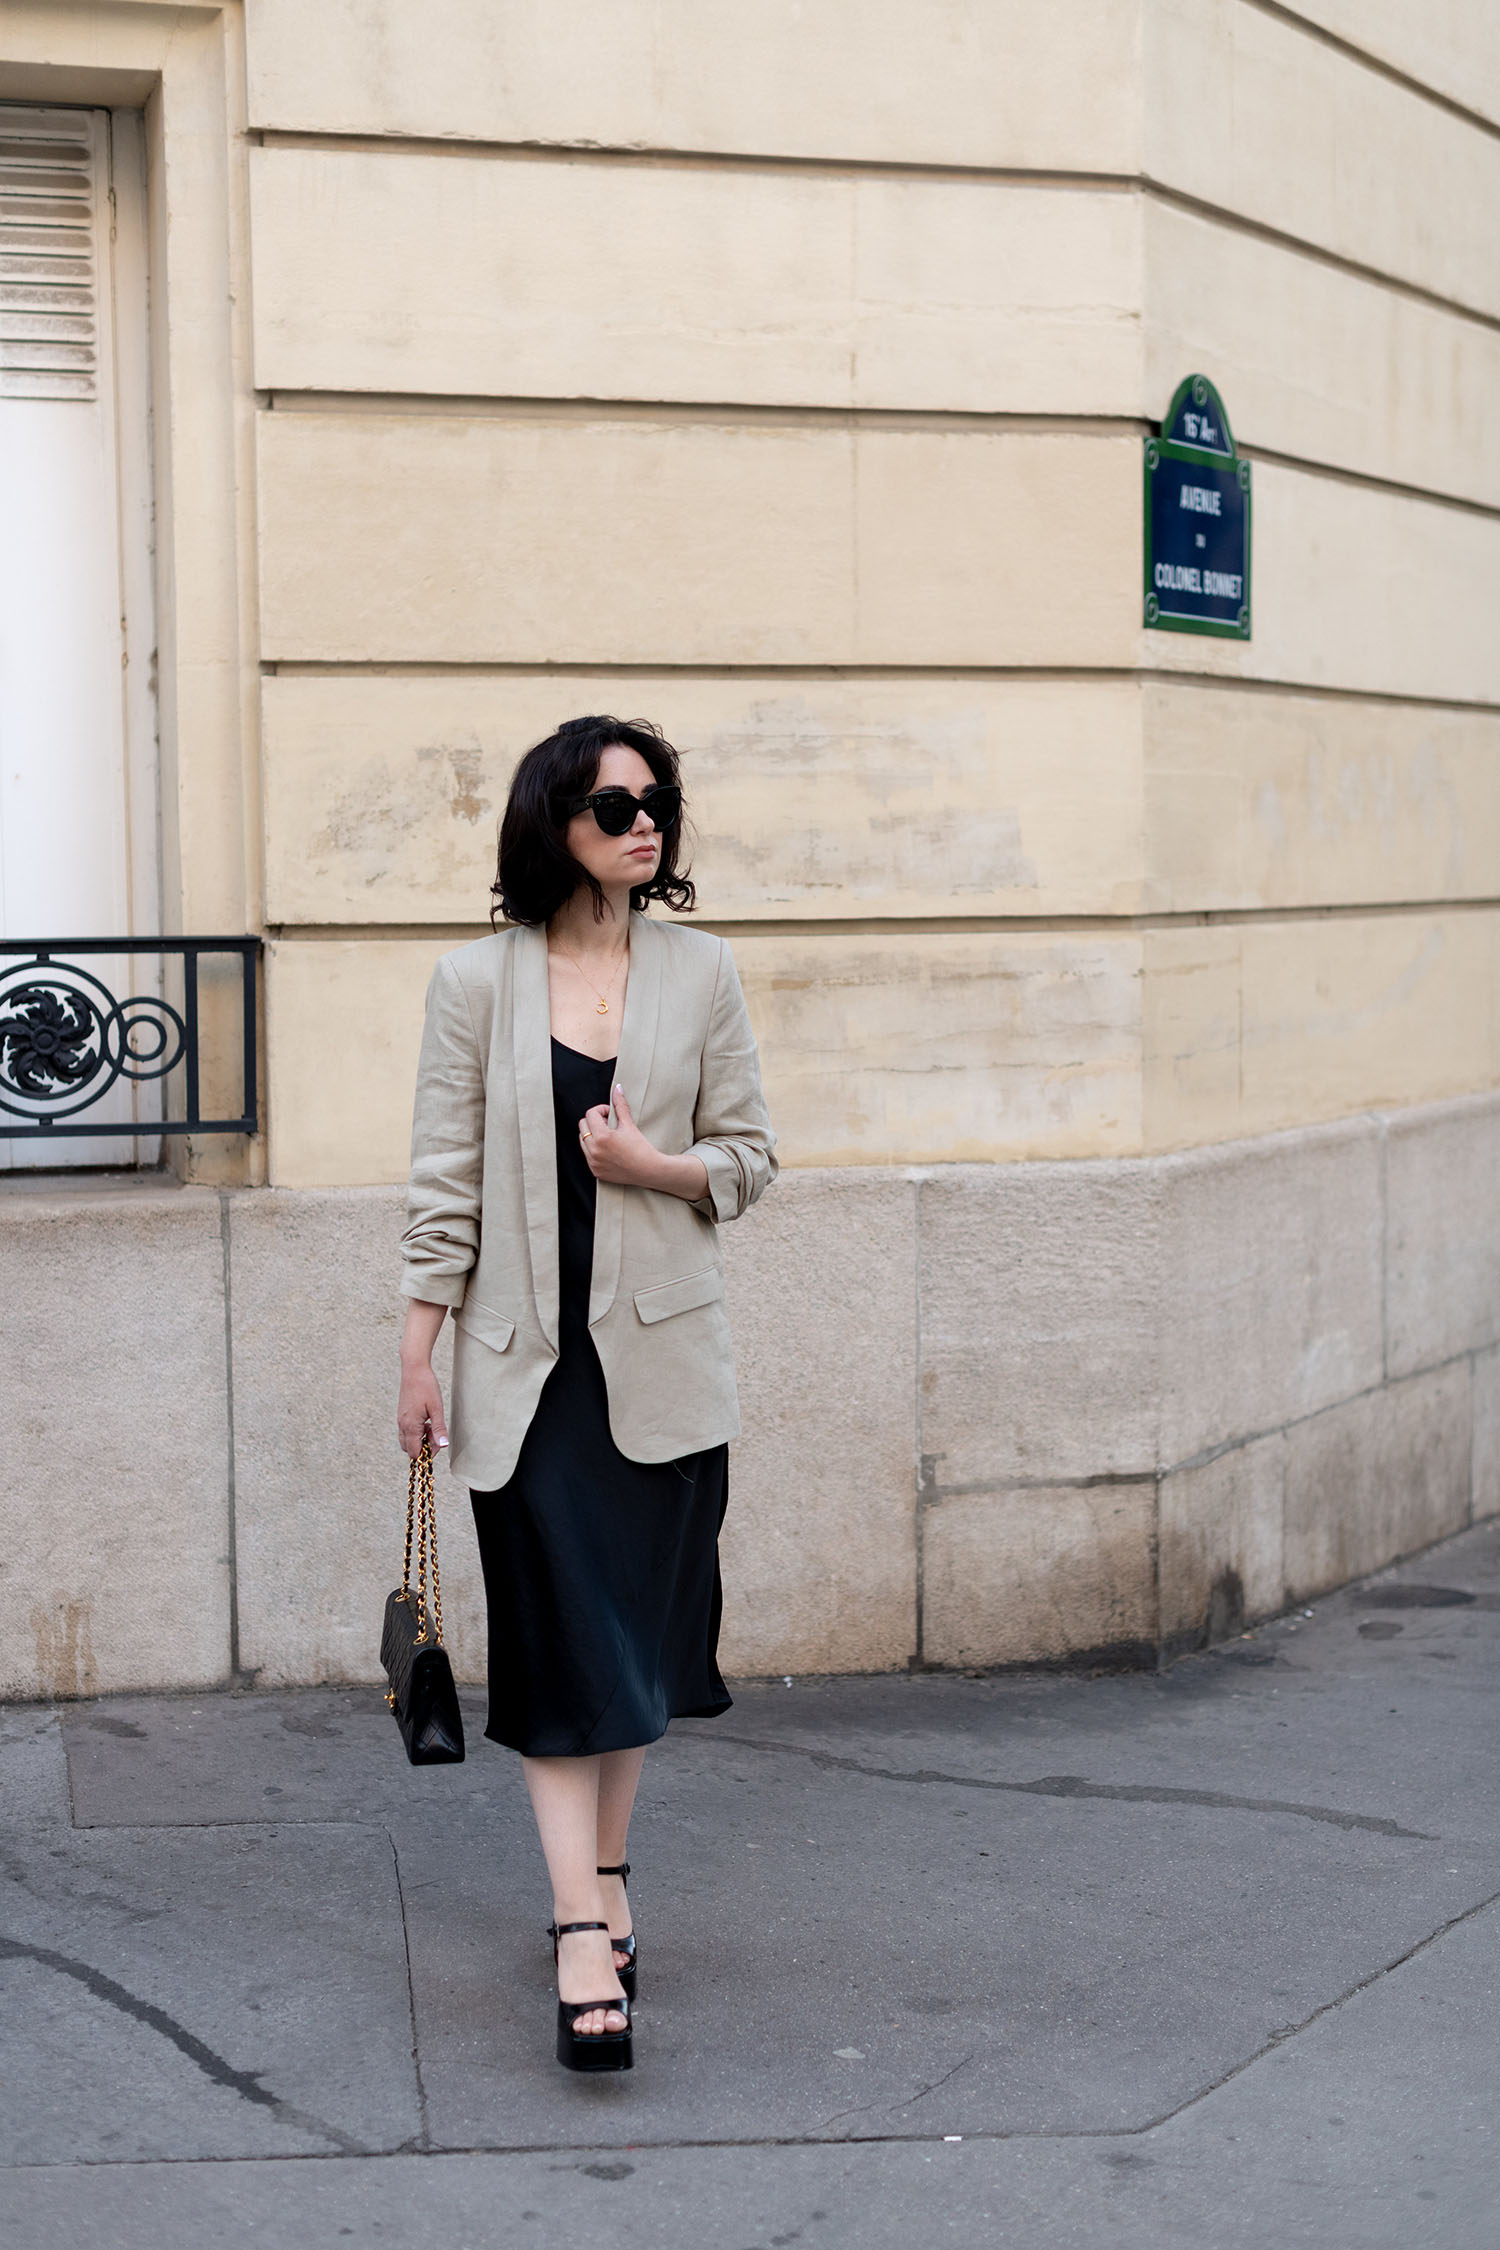 Coco & Voltaire - Chanel double flap handbag, Celine Audrey sunglasses, Jonak platform sandals